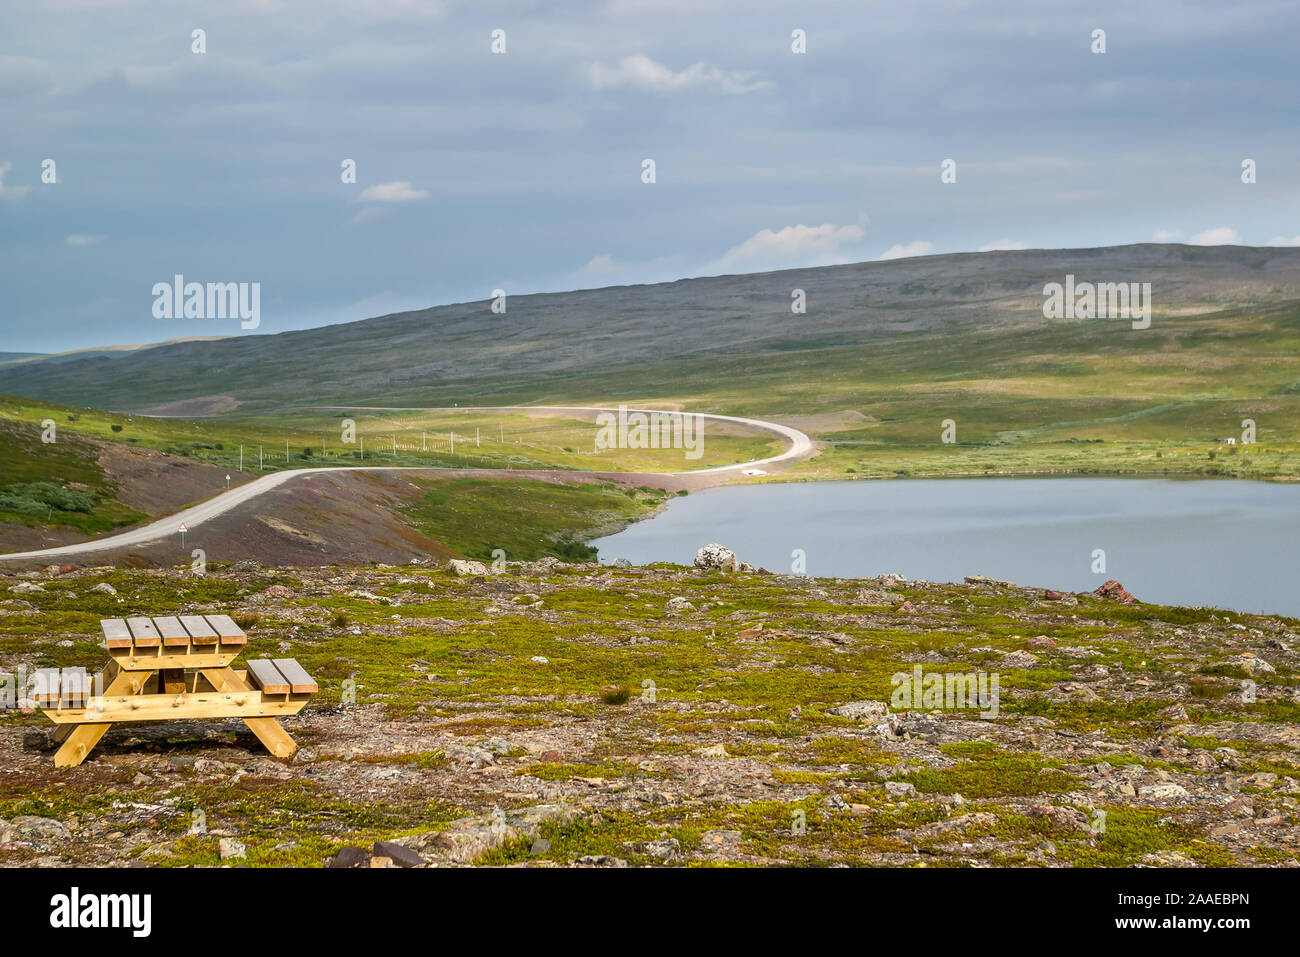 In legno Tavolo picnic con panche in prossimità di un lago e vuoto strada asfaltata attraverso estate norvegese colline verdi in Finnmark, Norvegia. Foto Stock